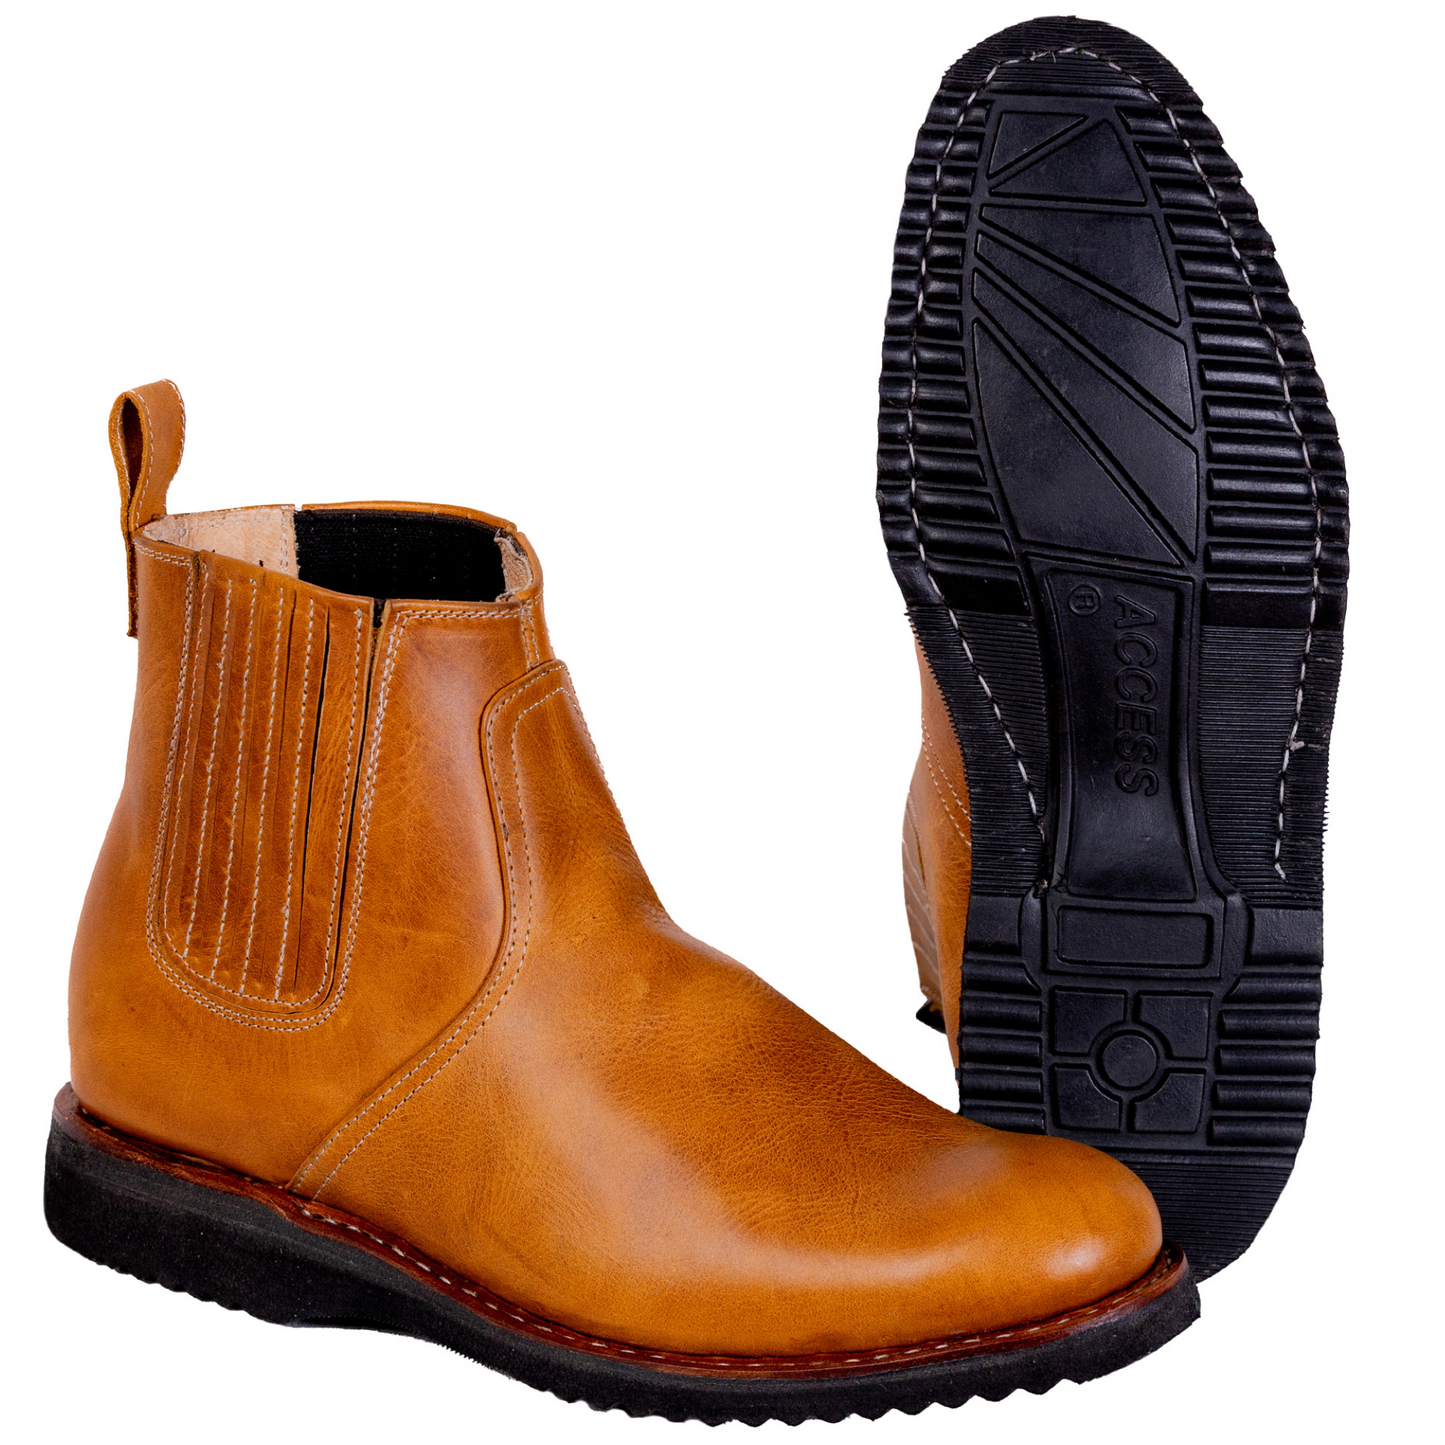 Sierra Leather Men's Boots